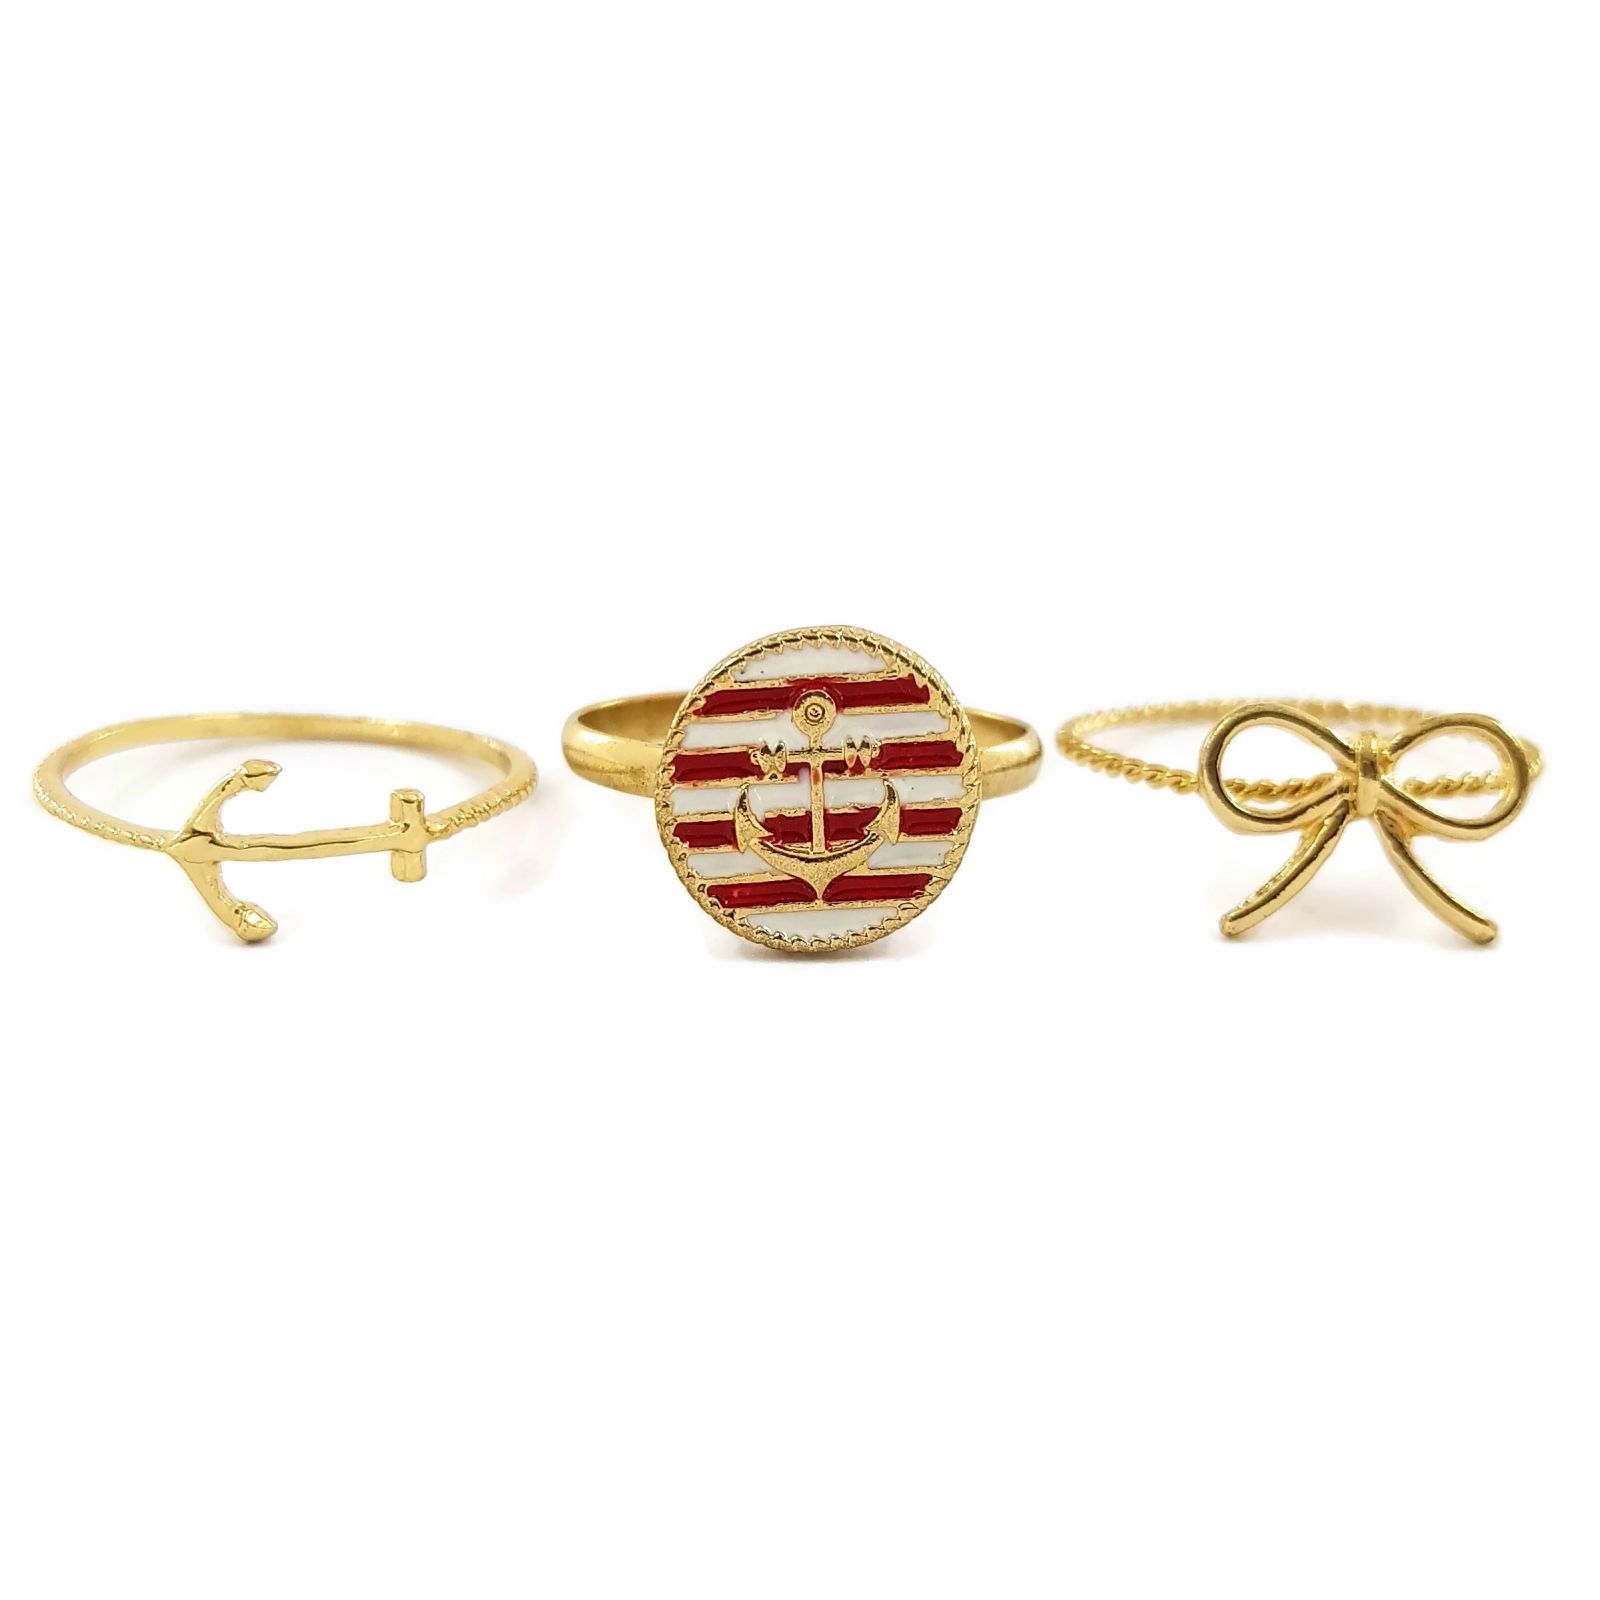 Prsteny zlaté barvy s námořnickými motivy